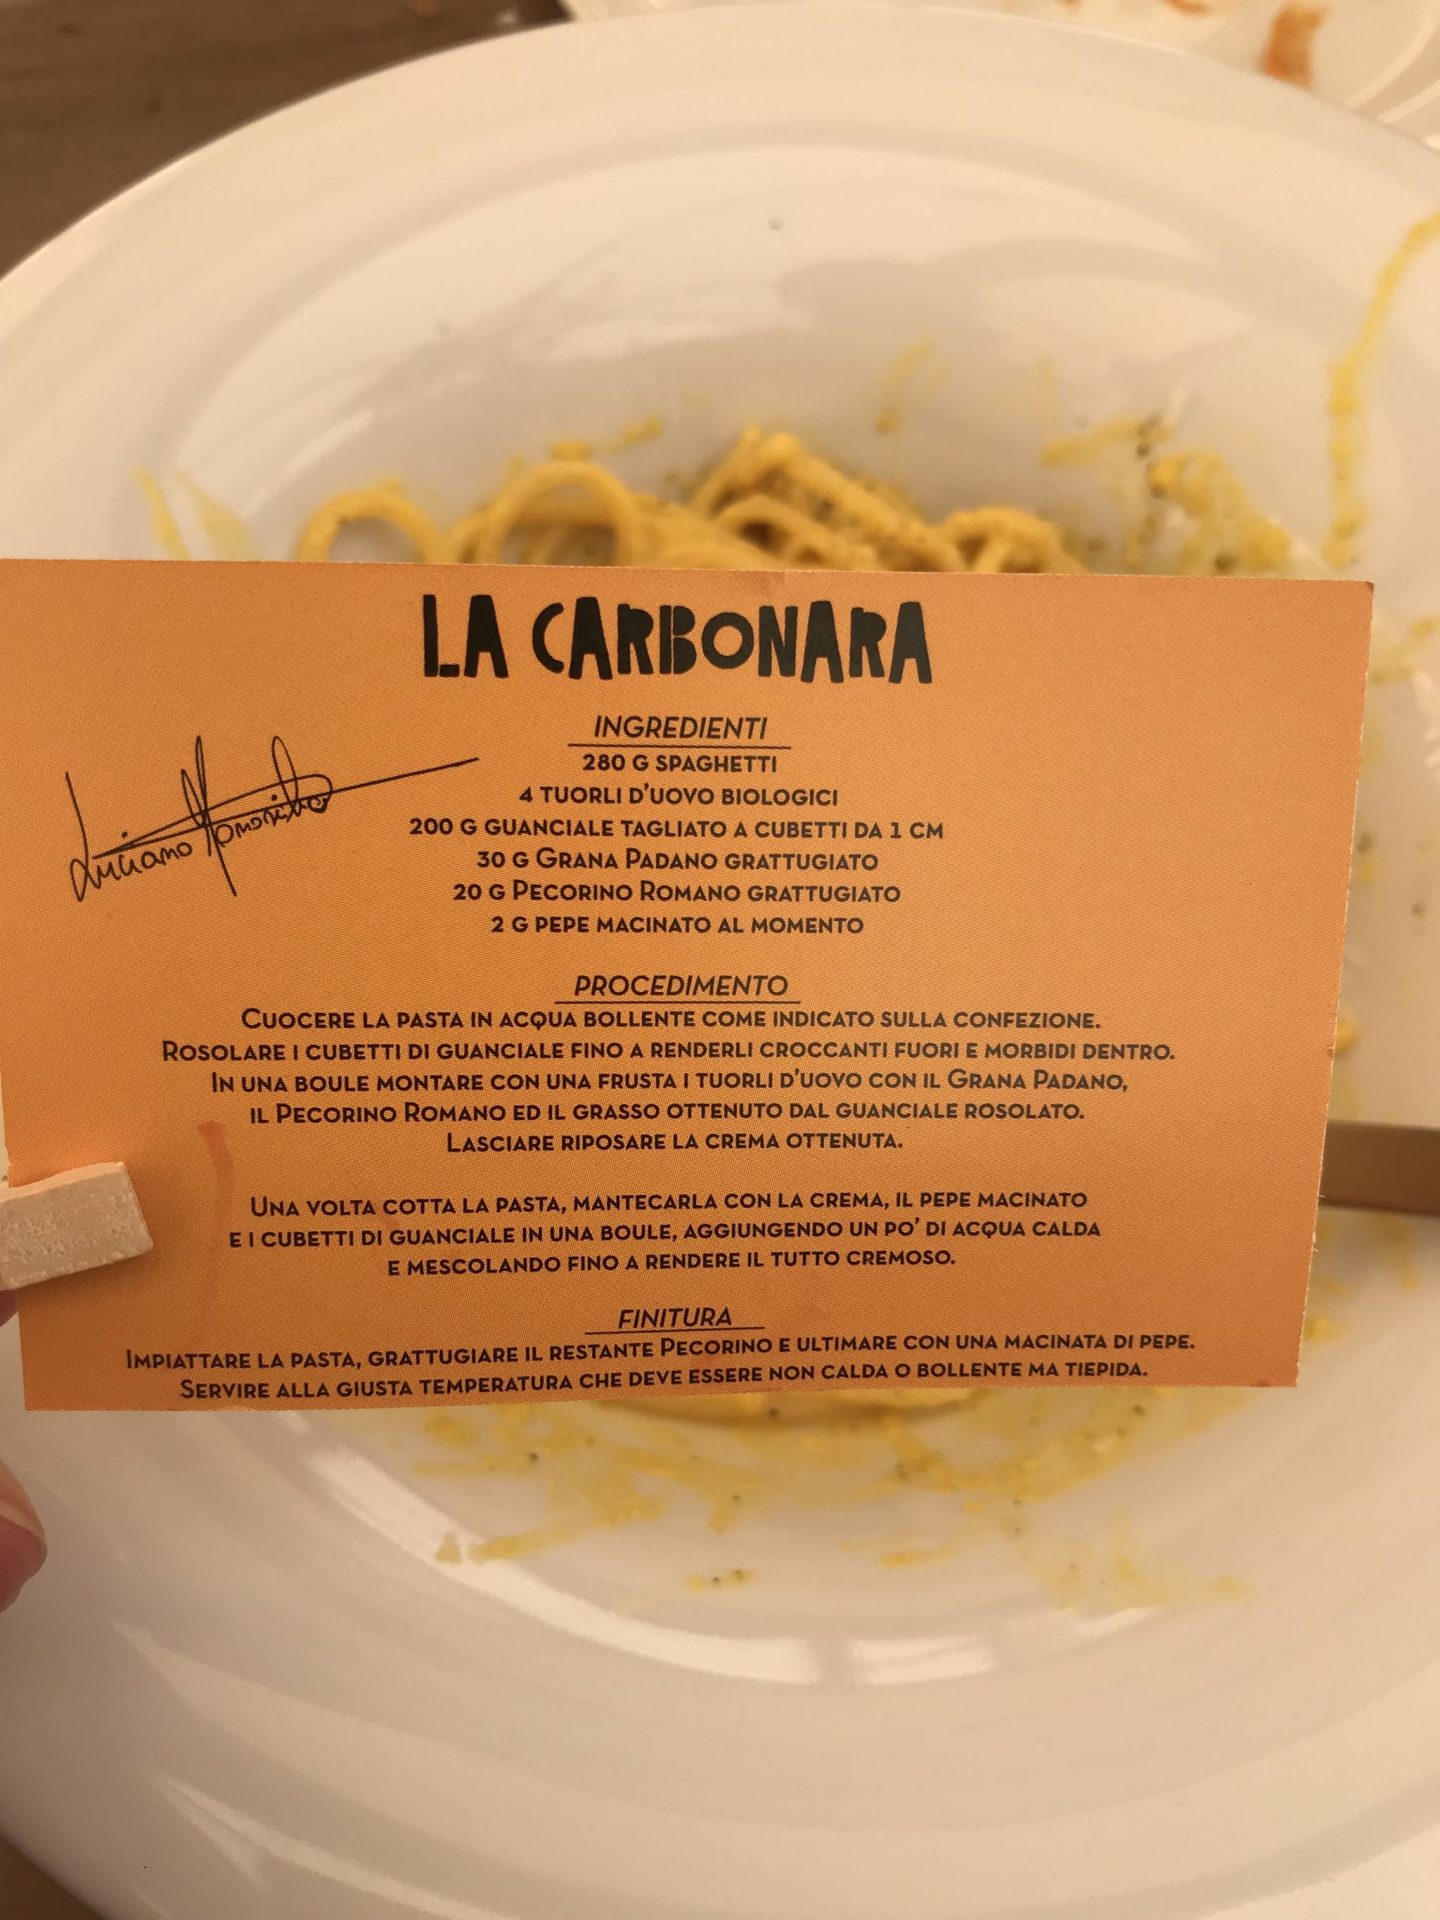 a small orange card with a carbonara recipe at Luciano near Campo de' fiori